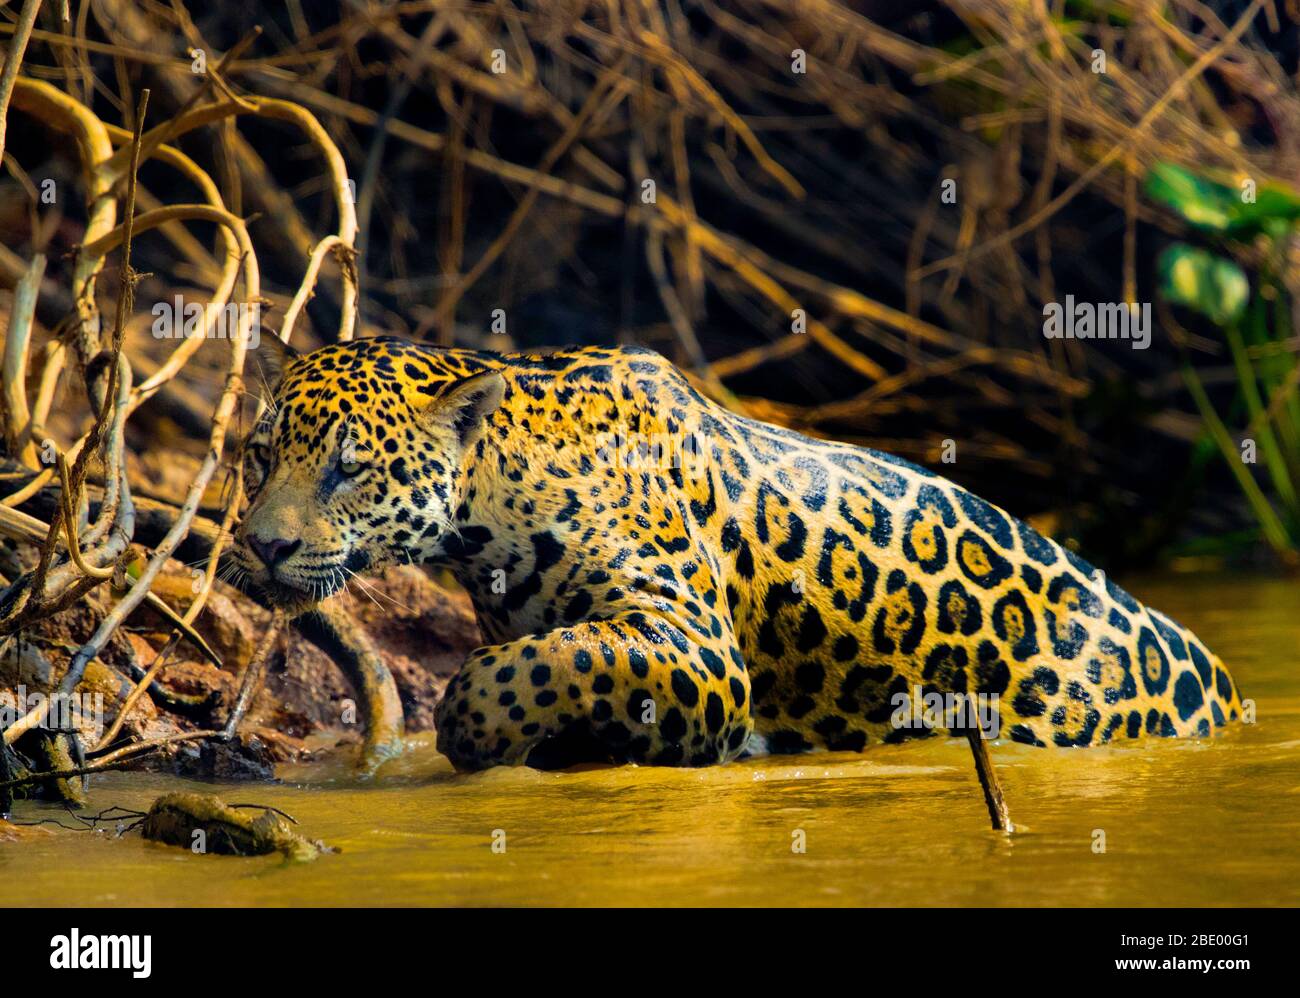 Jaguar che cammina in acqua, Pantanal, Brasile Foto Stock